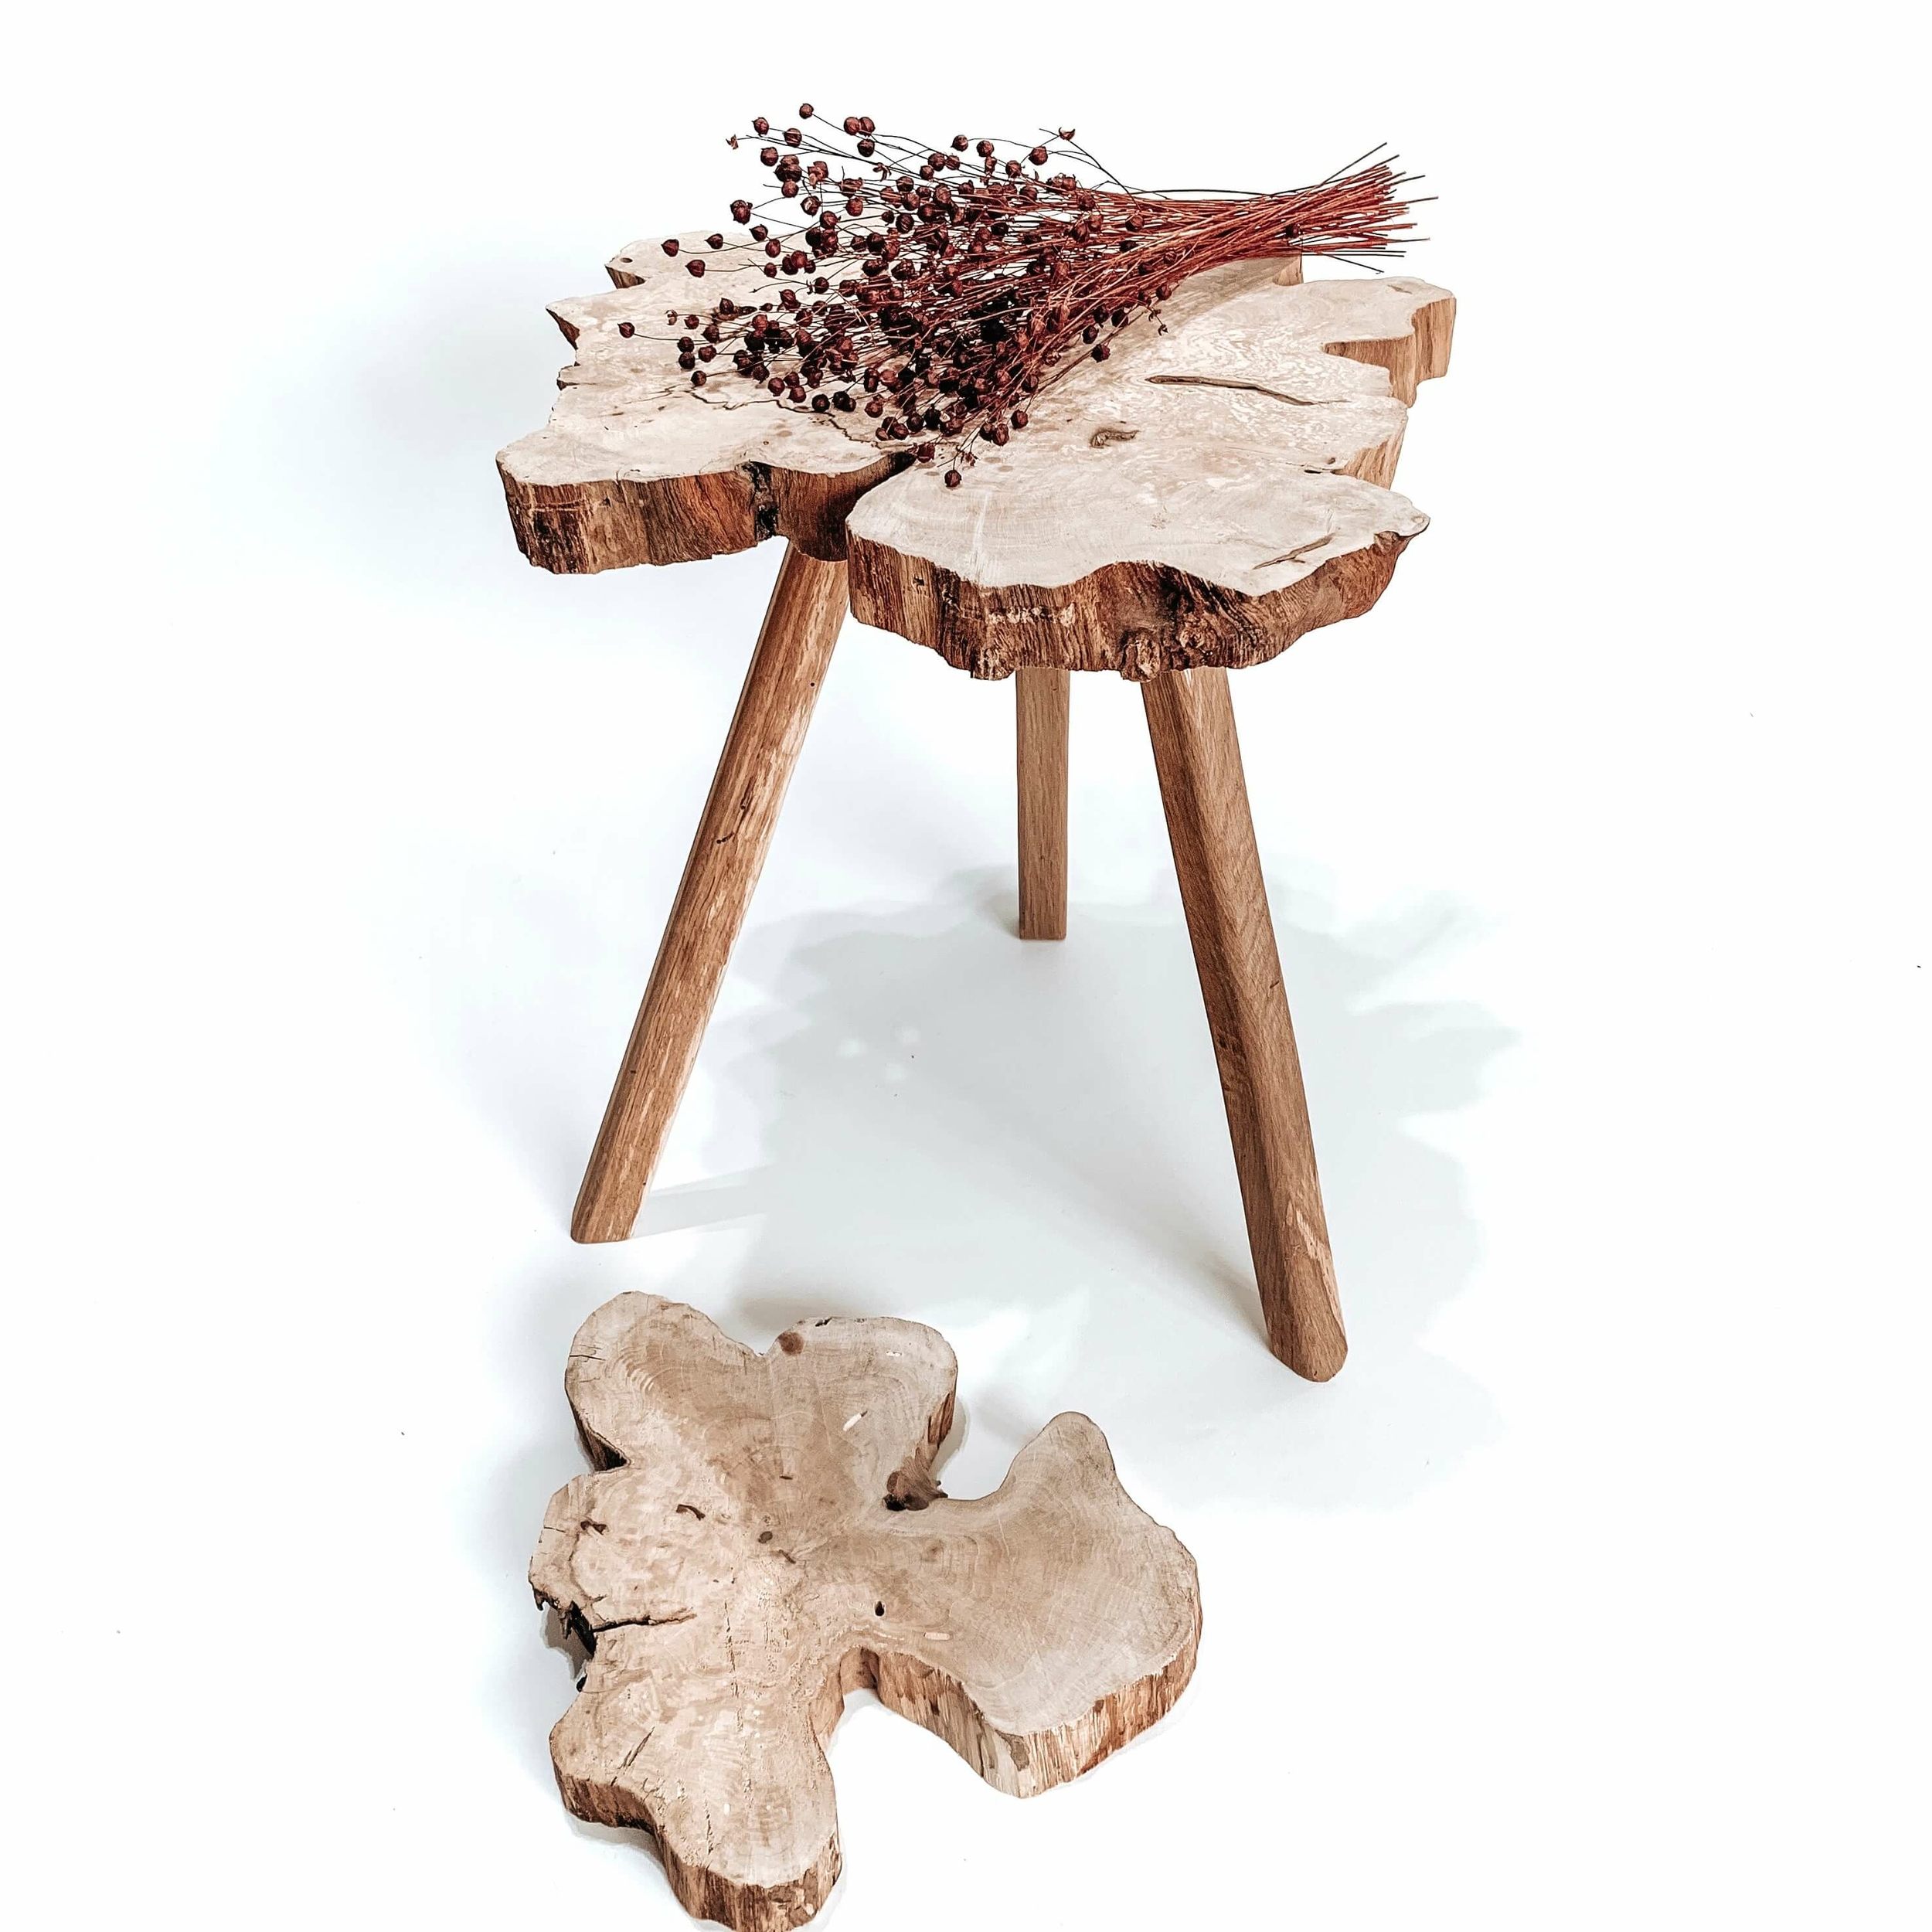 Table basse tronc arbre bois naturel table basse salon originale table meubles ecoresponsable